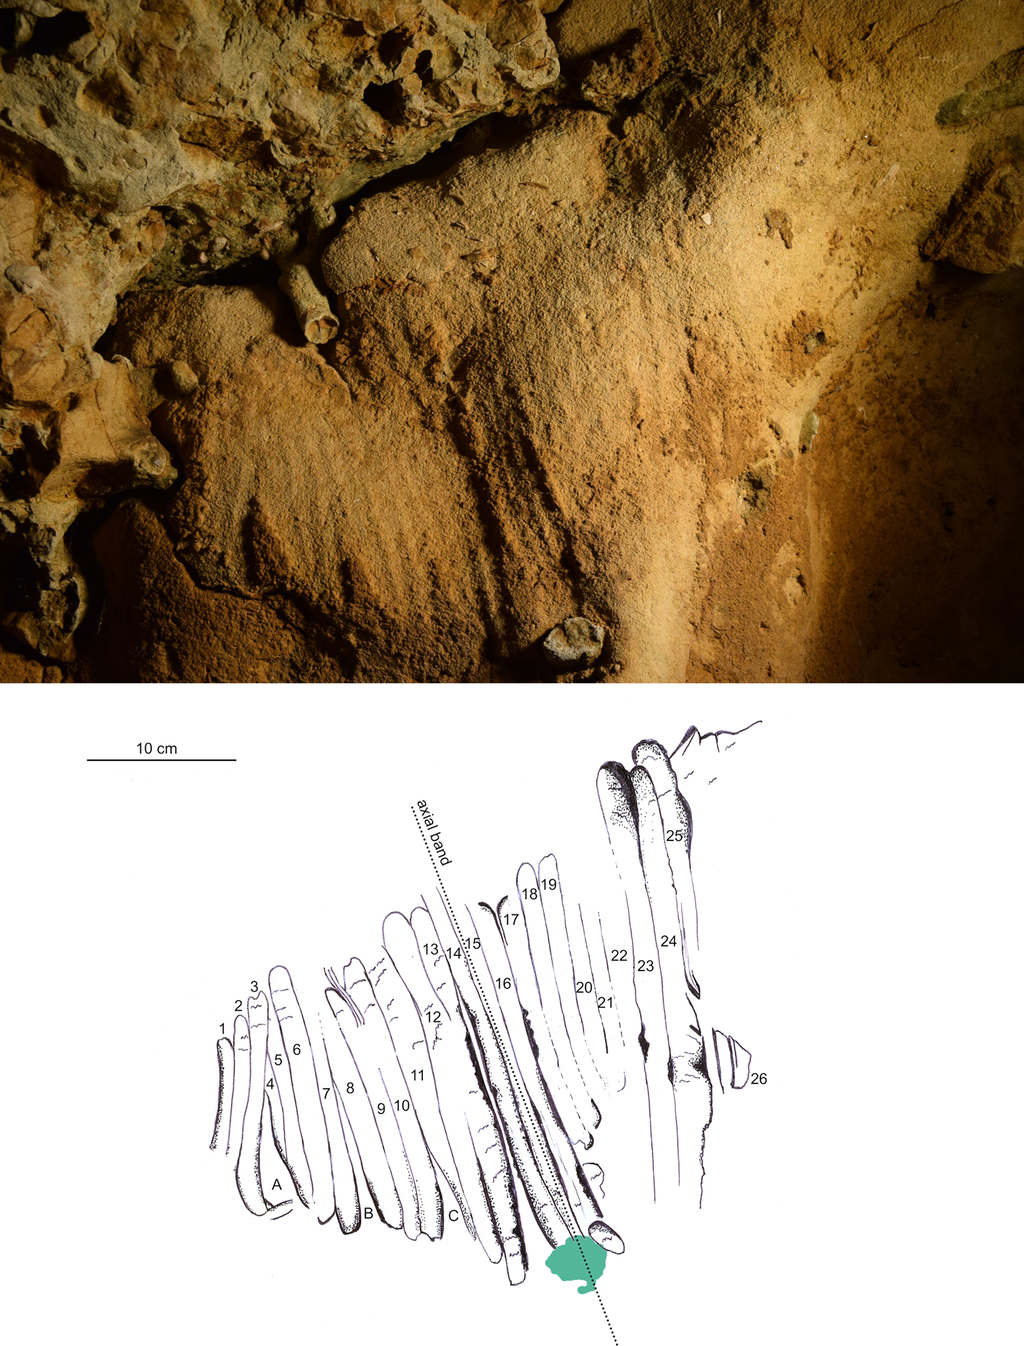 Estas artes rupestres foram feitas por neandertais antes mesmo dos humanos surgirem, mostrando grande inteligência e capacidade artística (Imagem: Marquet et al/PLOS One)